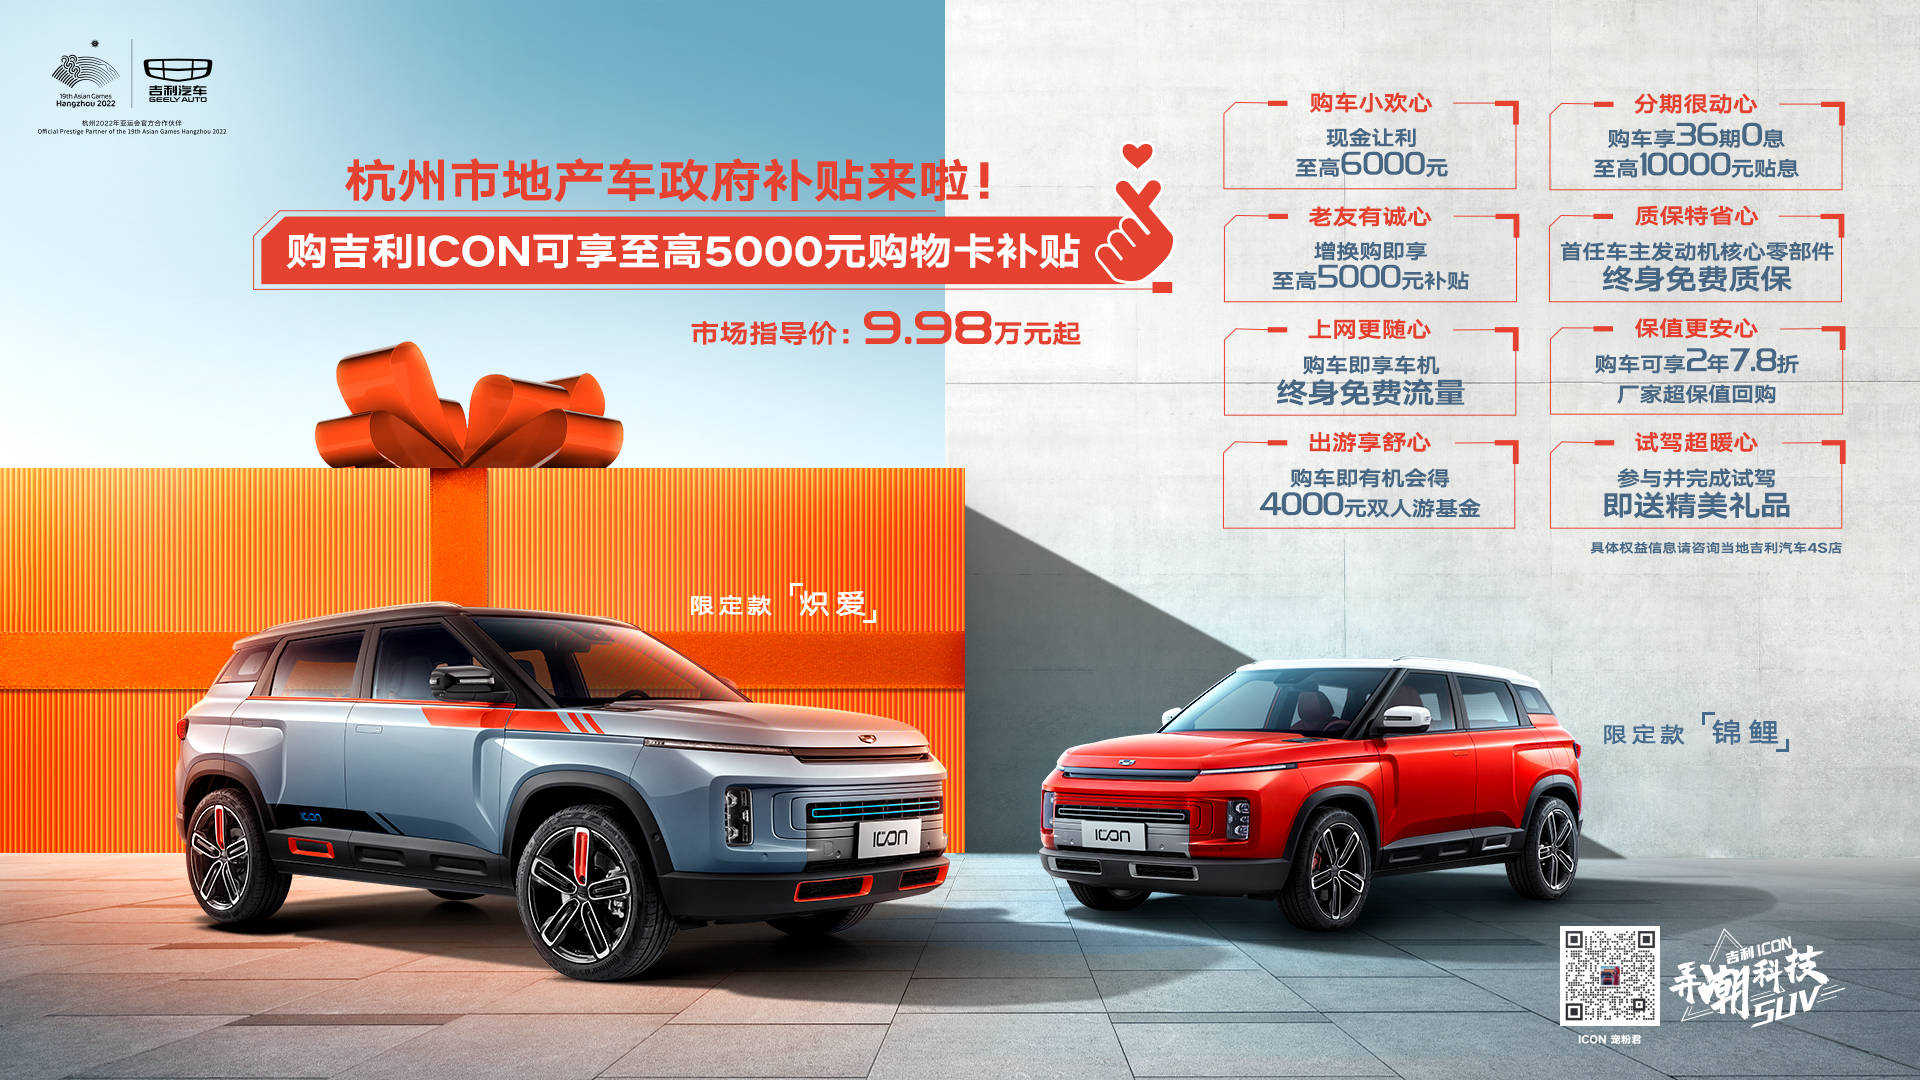 现购吉利icon可享杭州地产车补贴